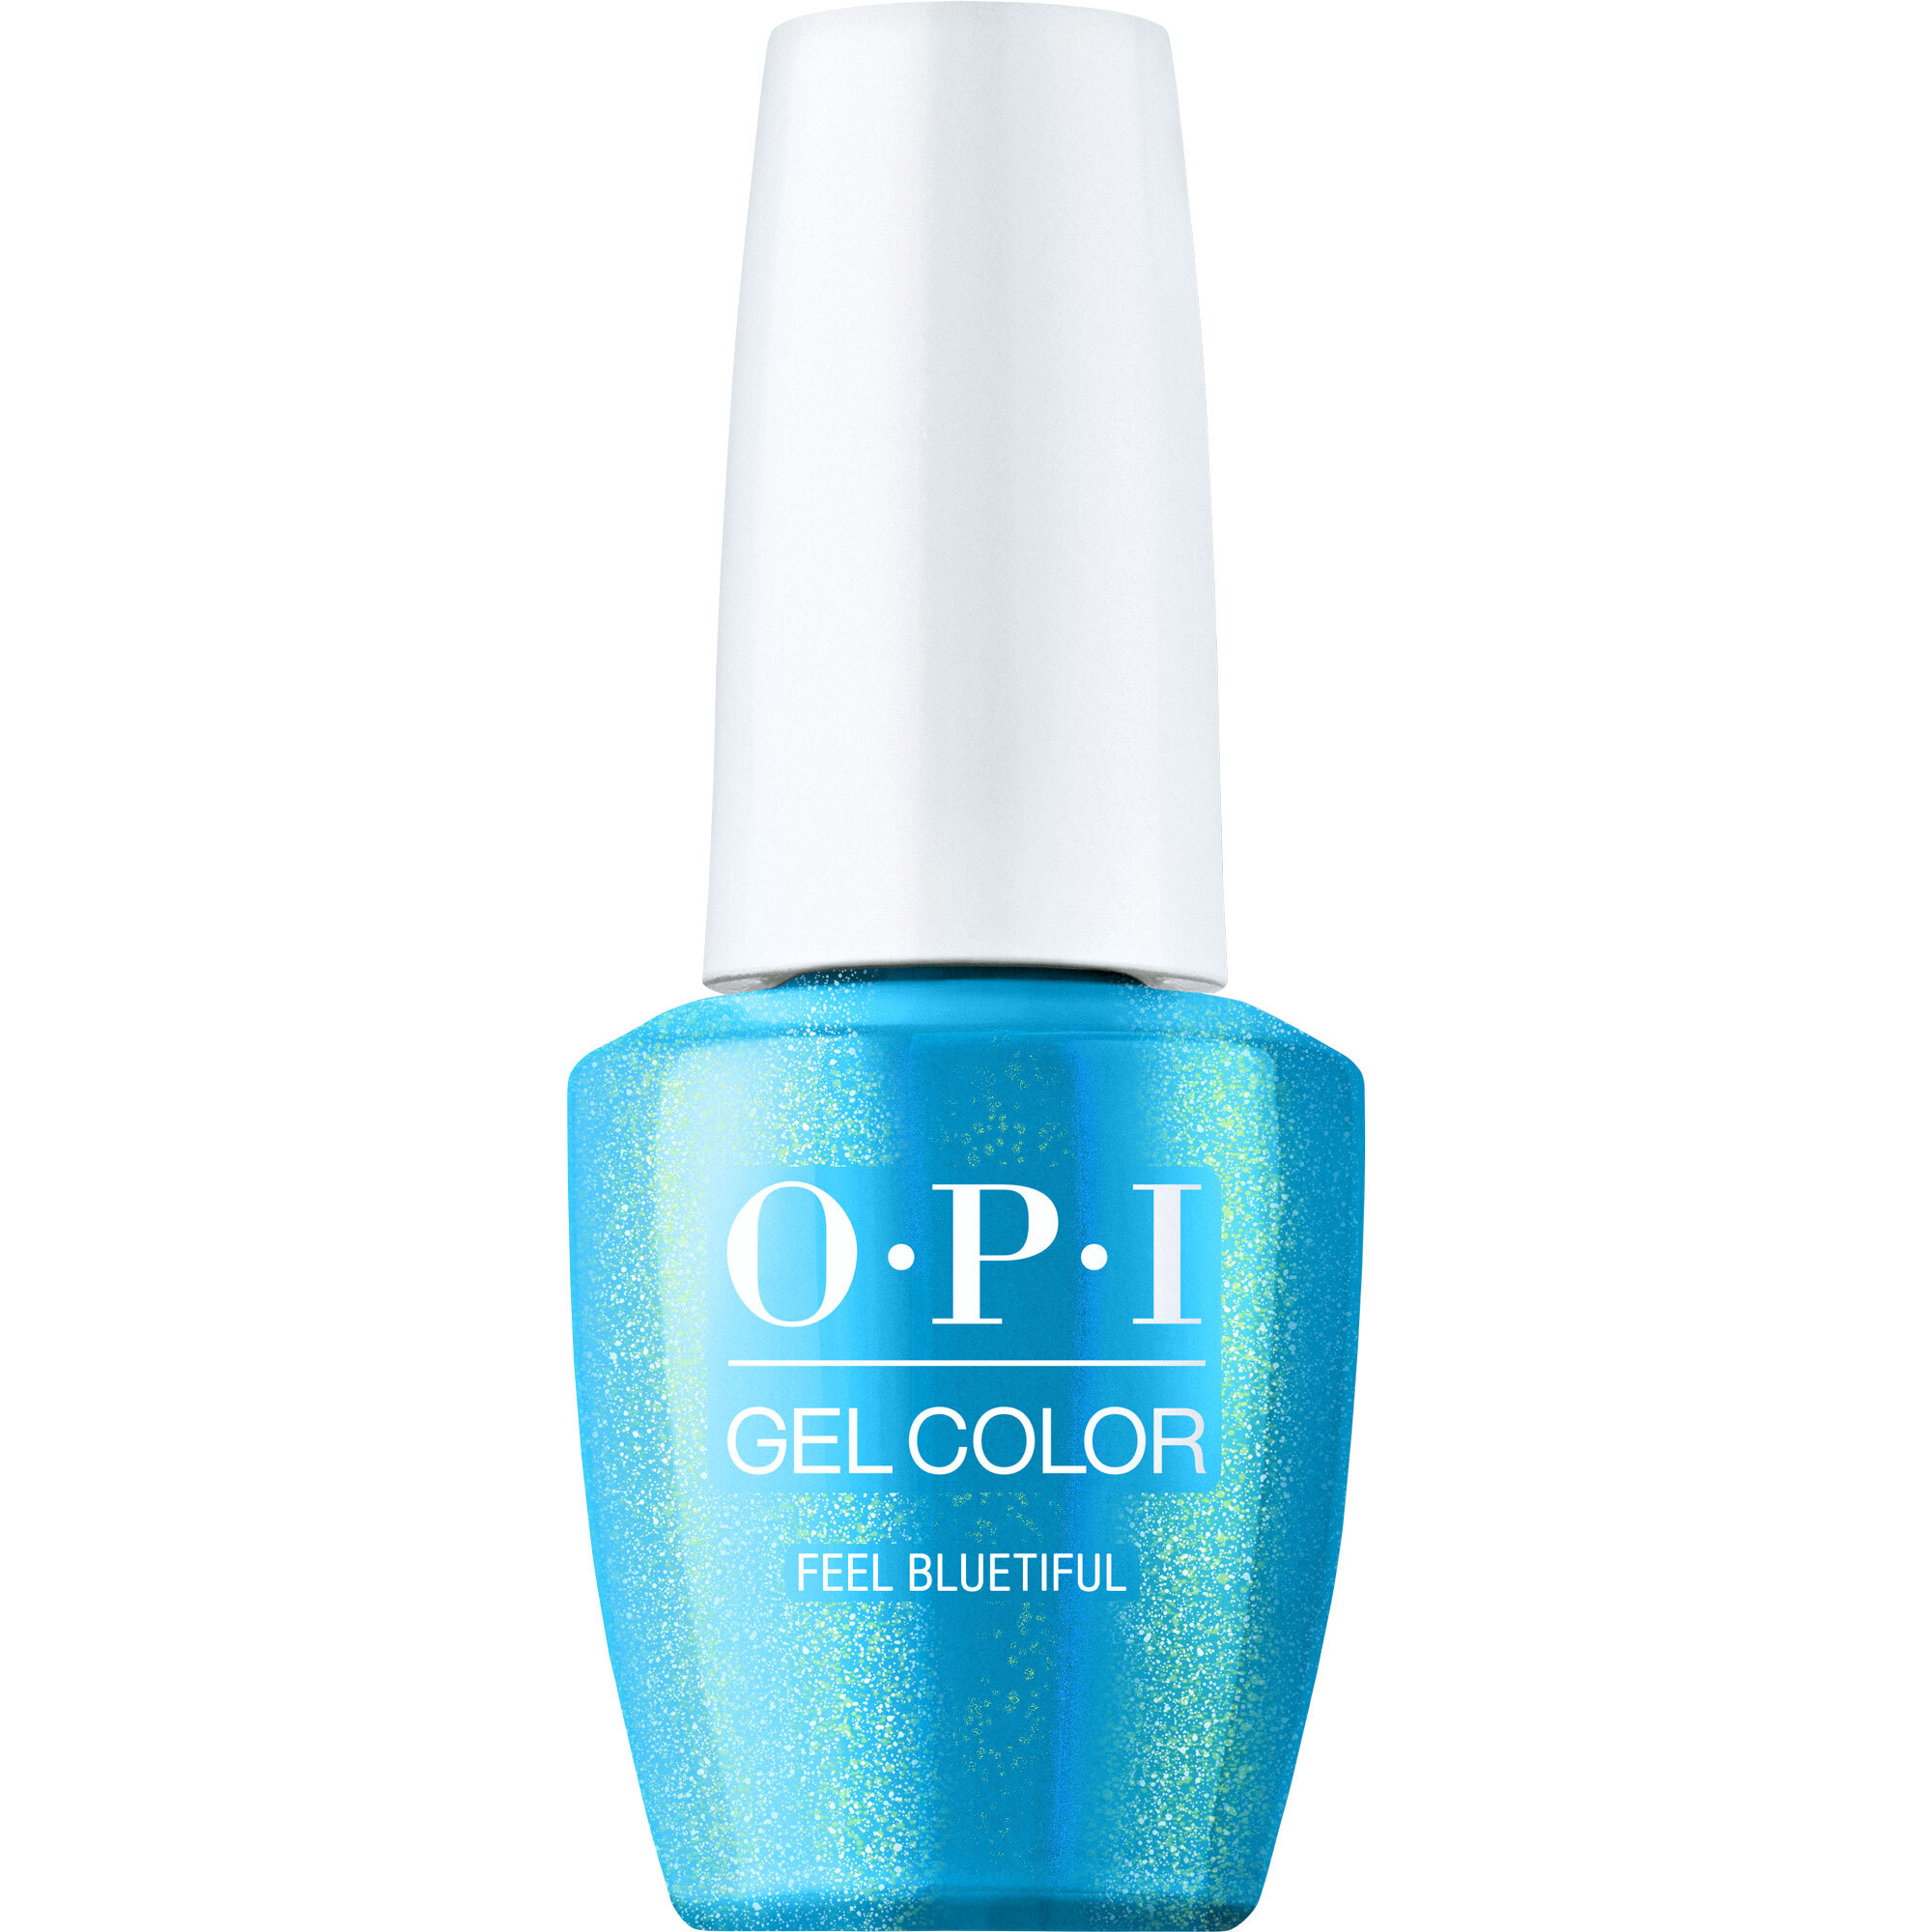 OPI Gel Color 360 - Feel Bluetiful